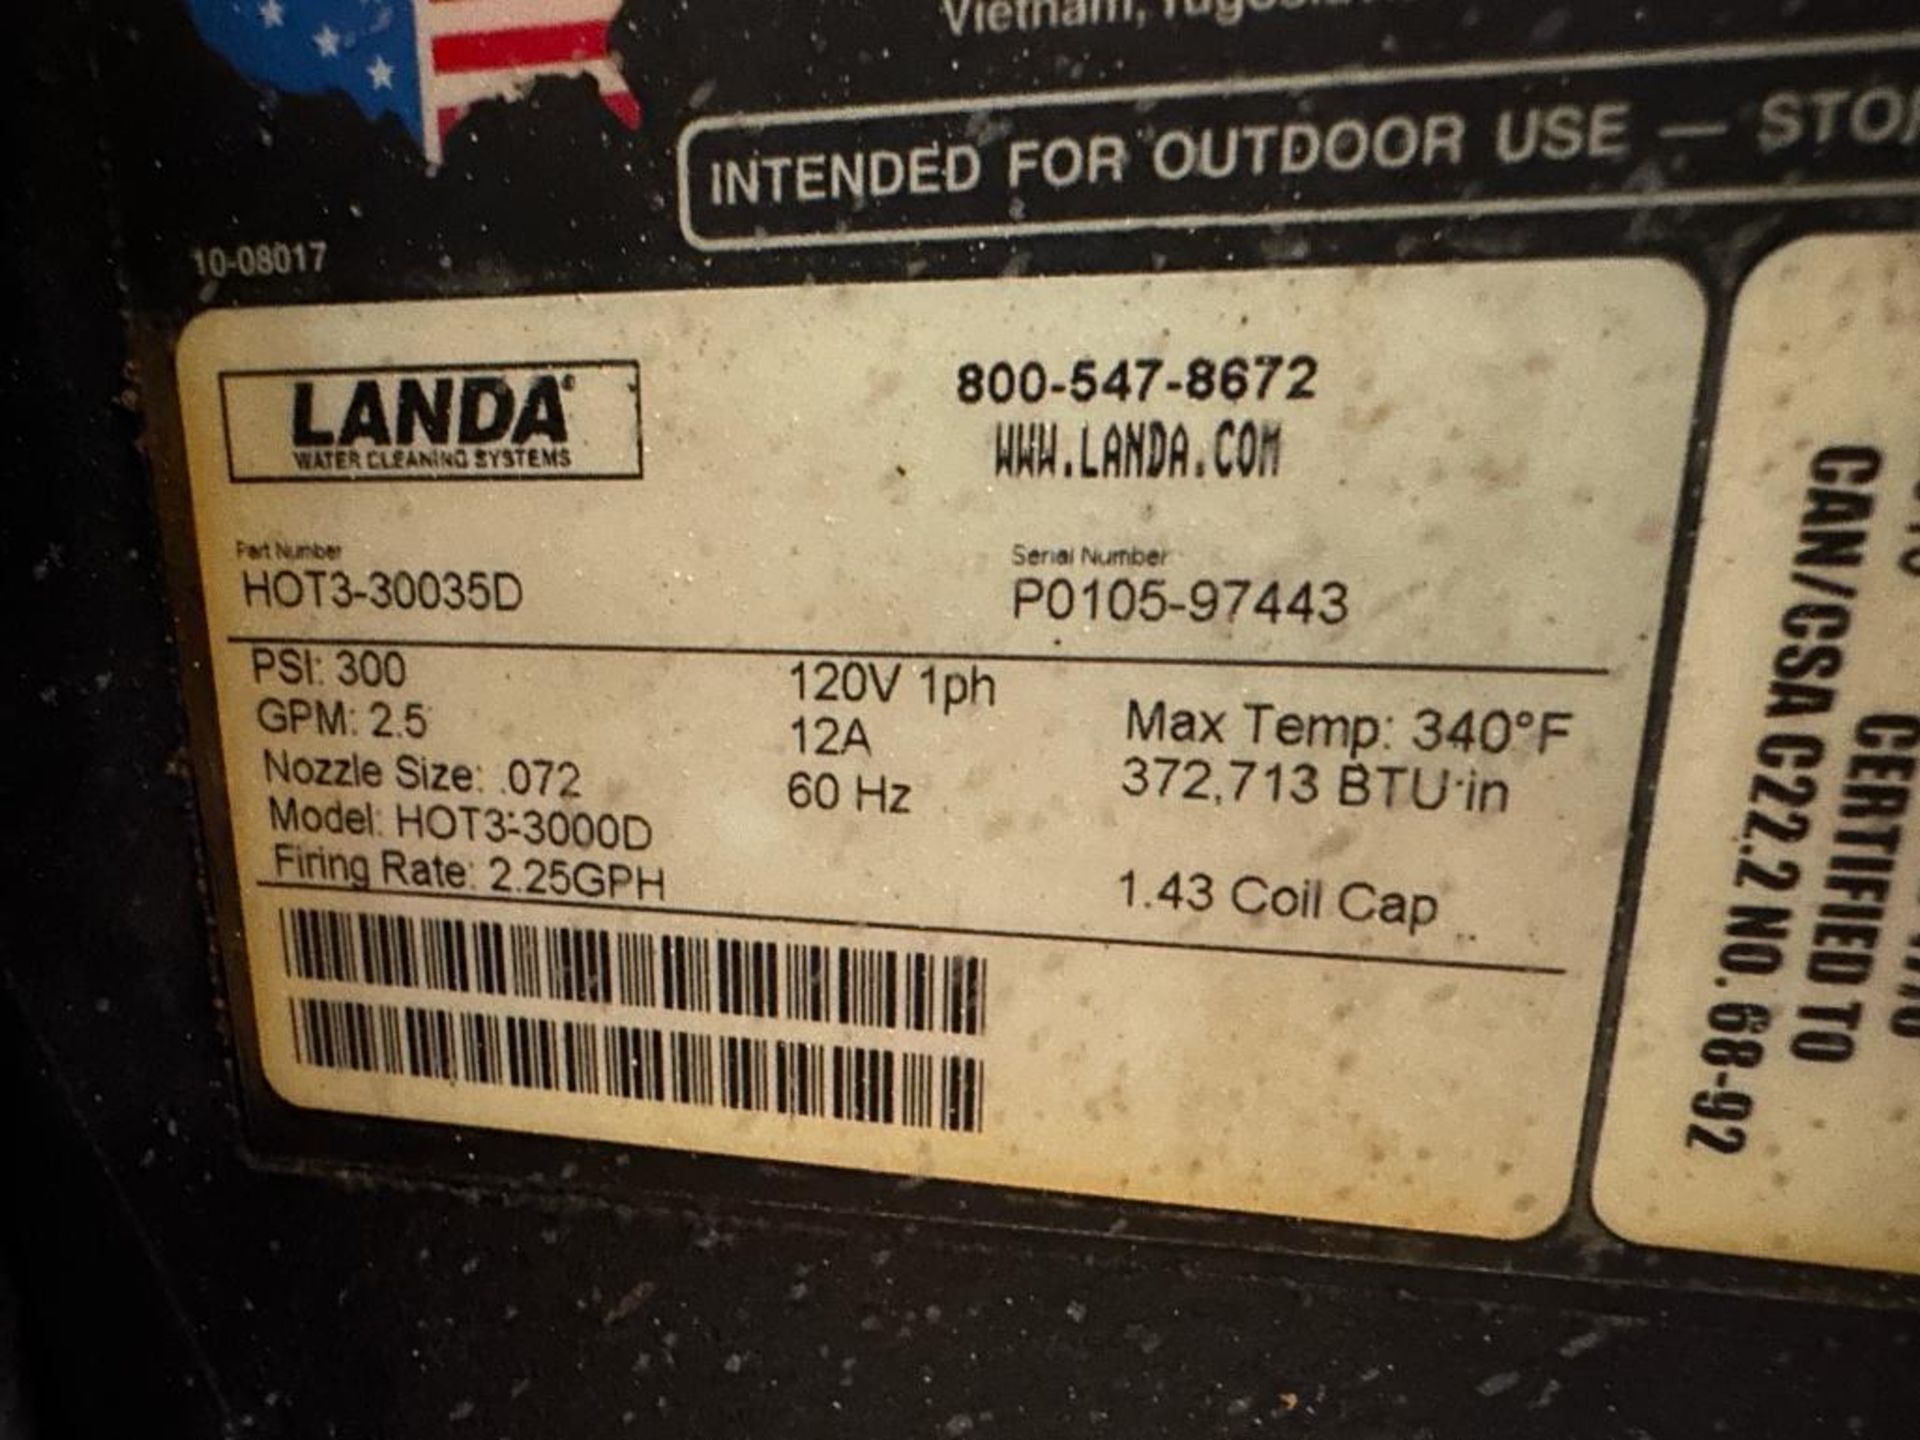 Landa HOT3-30035D Mobile Pressure Washer - Image 10 of 11